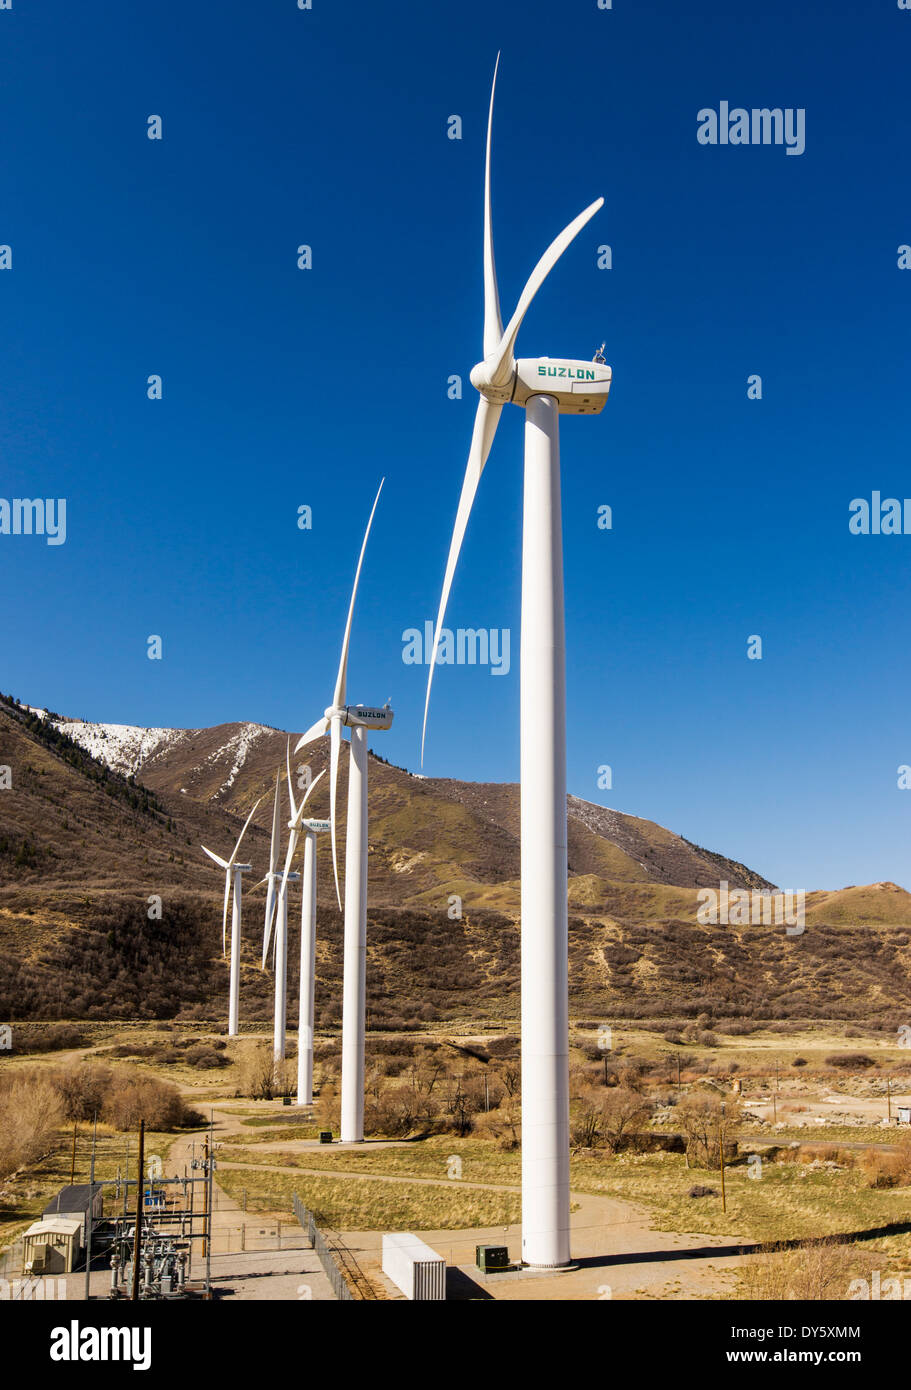 Éoliennes utilisées pour produire de l'électricité, de Spanish Fork, Utah, USA Banque D'Images